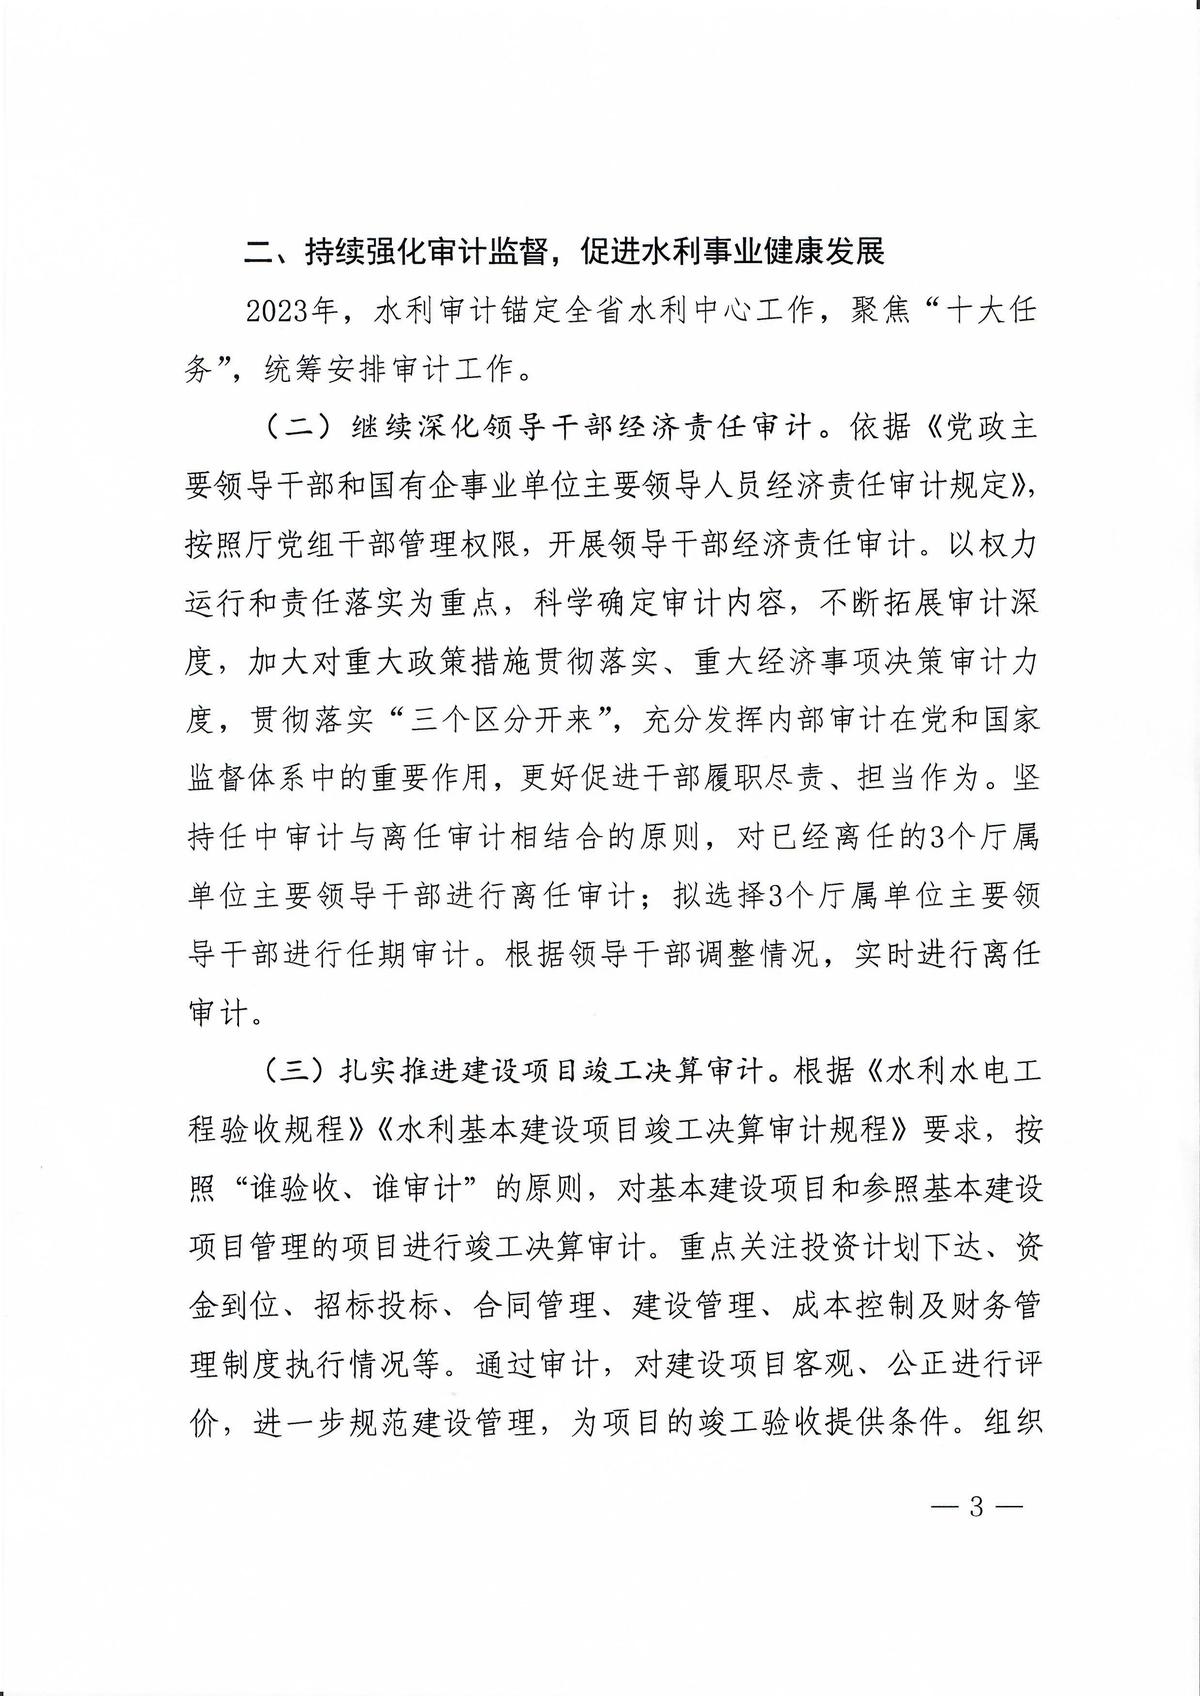 河南省水利厅办公室关于印发2023年水利审计工作要点的通知